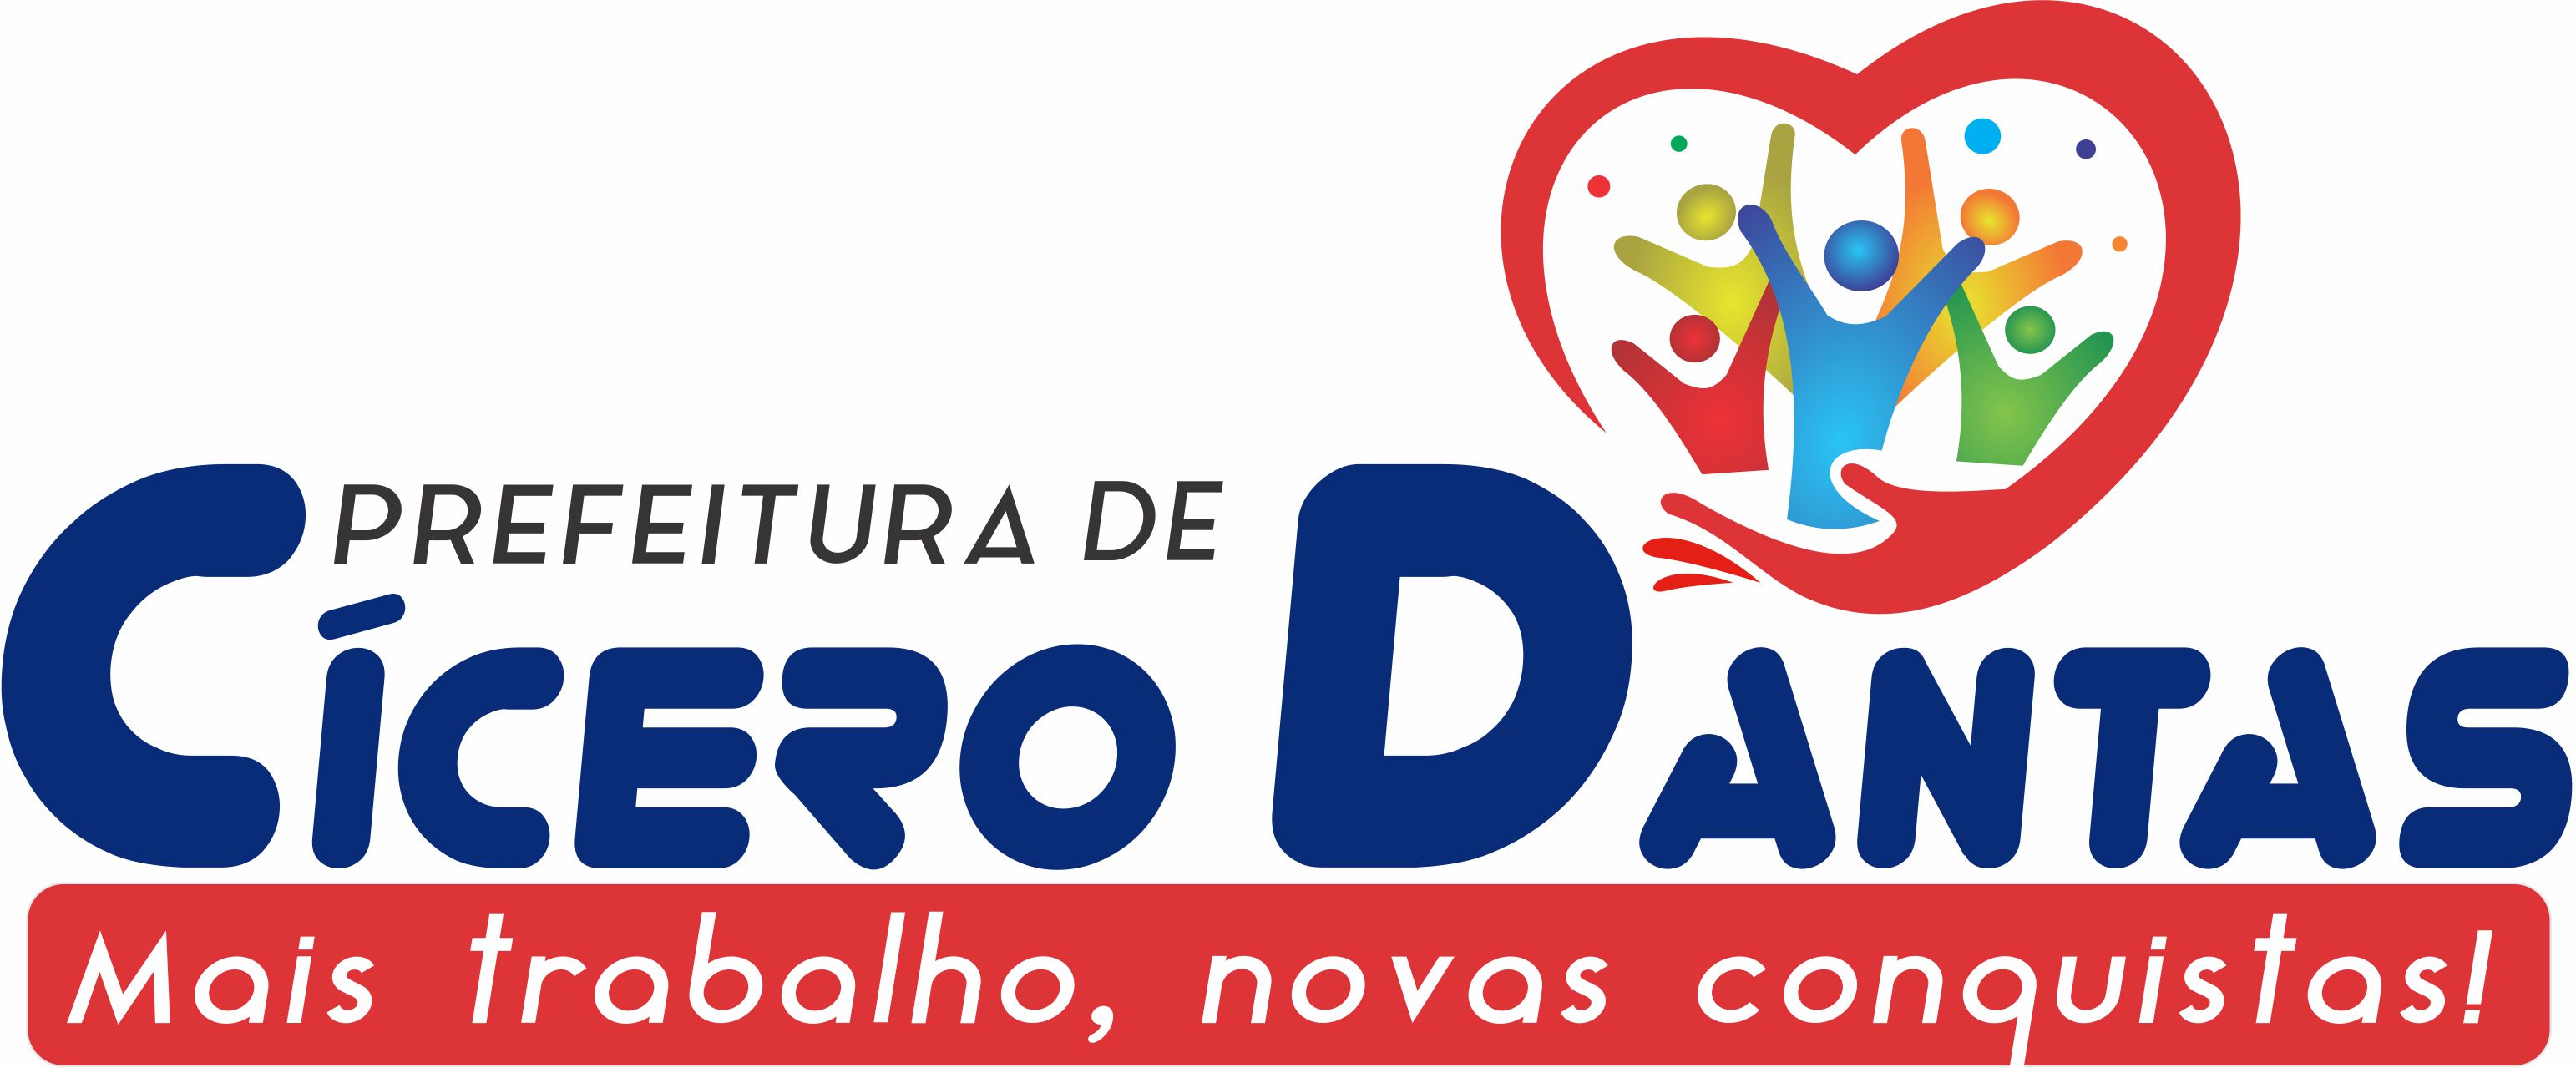 Campanha: Prefeitura Municipal de Cícero Dantas